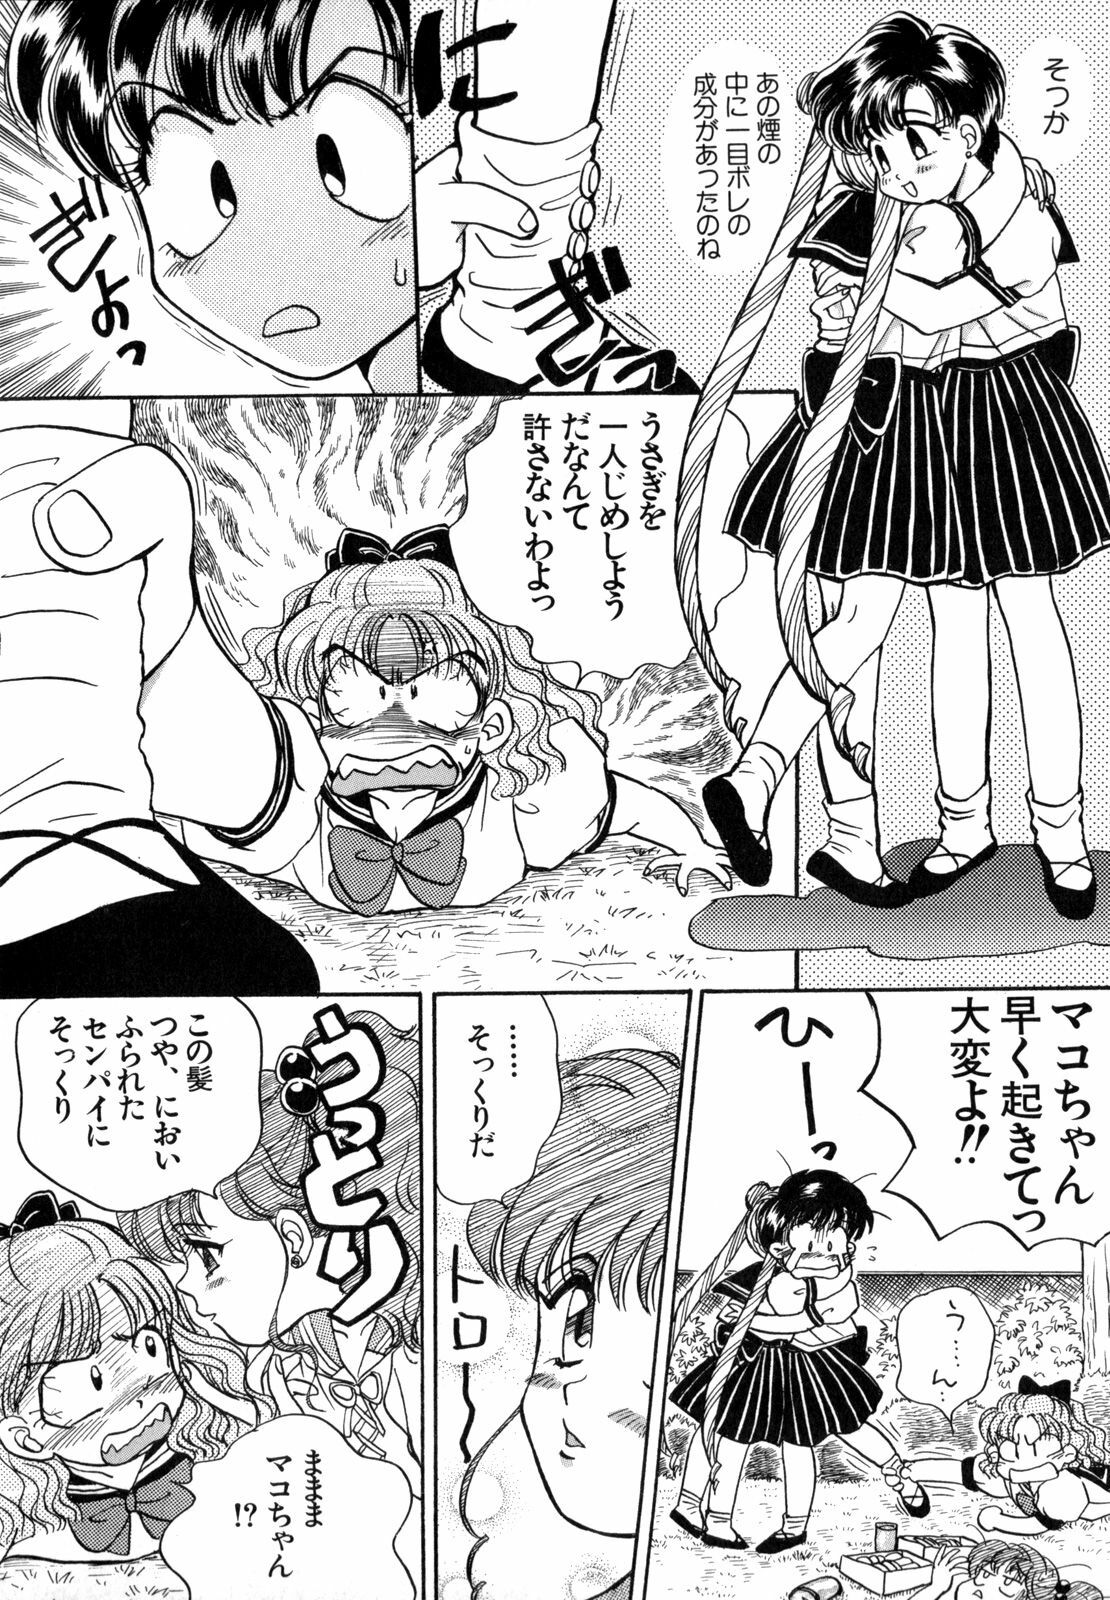 [Anthology] Lunatic Party 4 (Bishoujo Senshi Sailor Moon) page 35 full